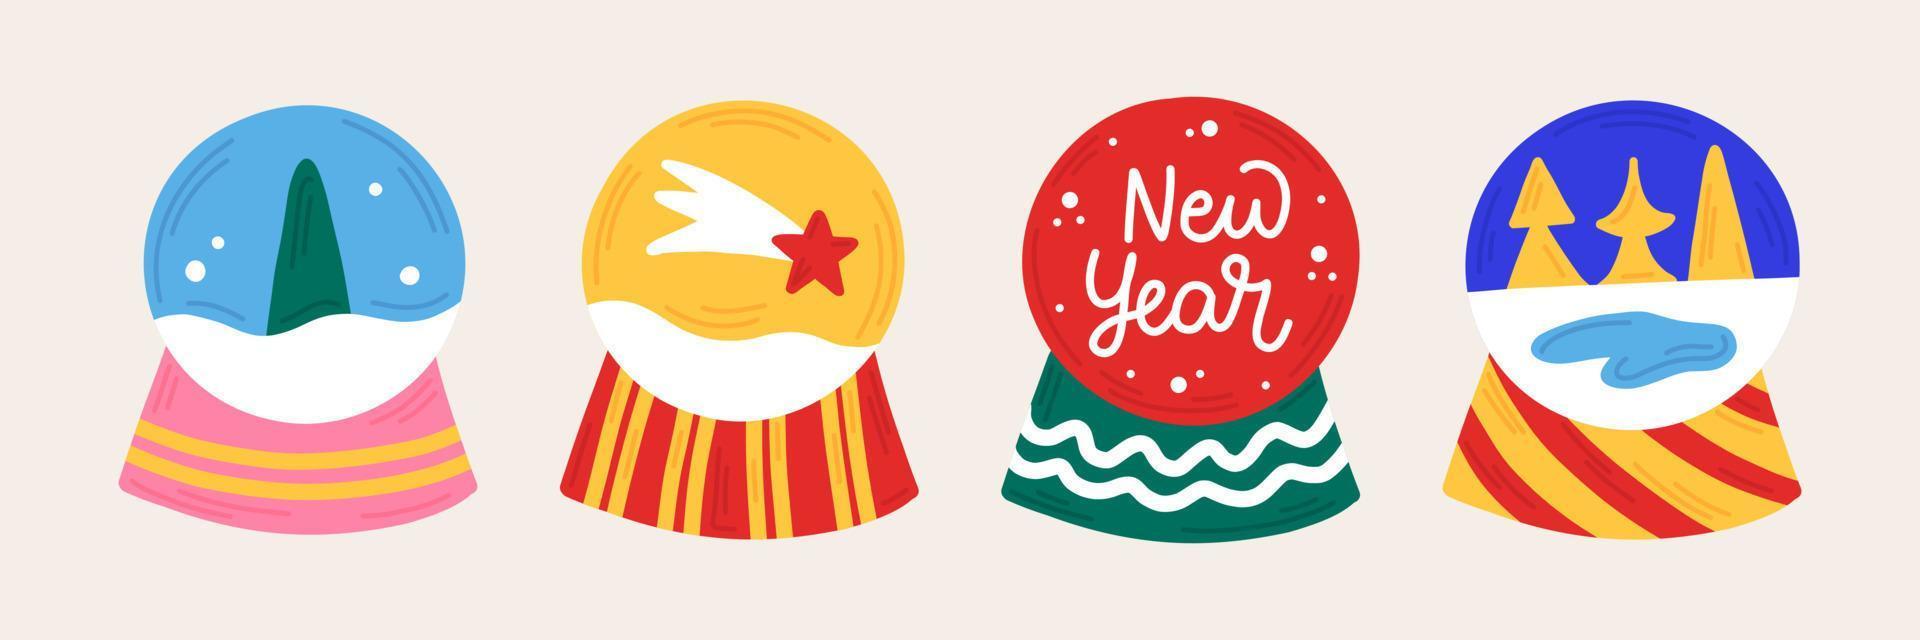 nuovo anno impostato Natale neve palle nel mano disegnato stile con ornamento. isolato icone, adesivi, elementi per il design di opuscoli, cartoline, manifesti, inviti. vettore